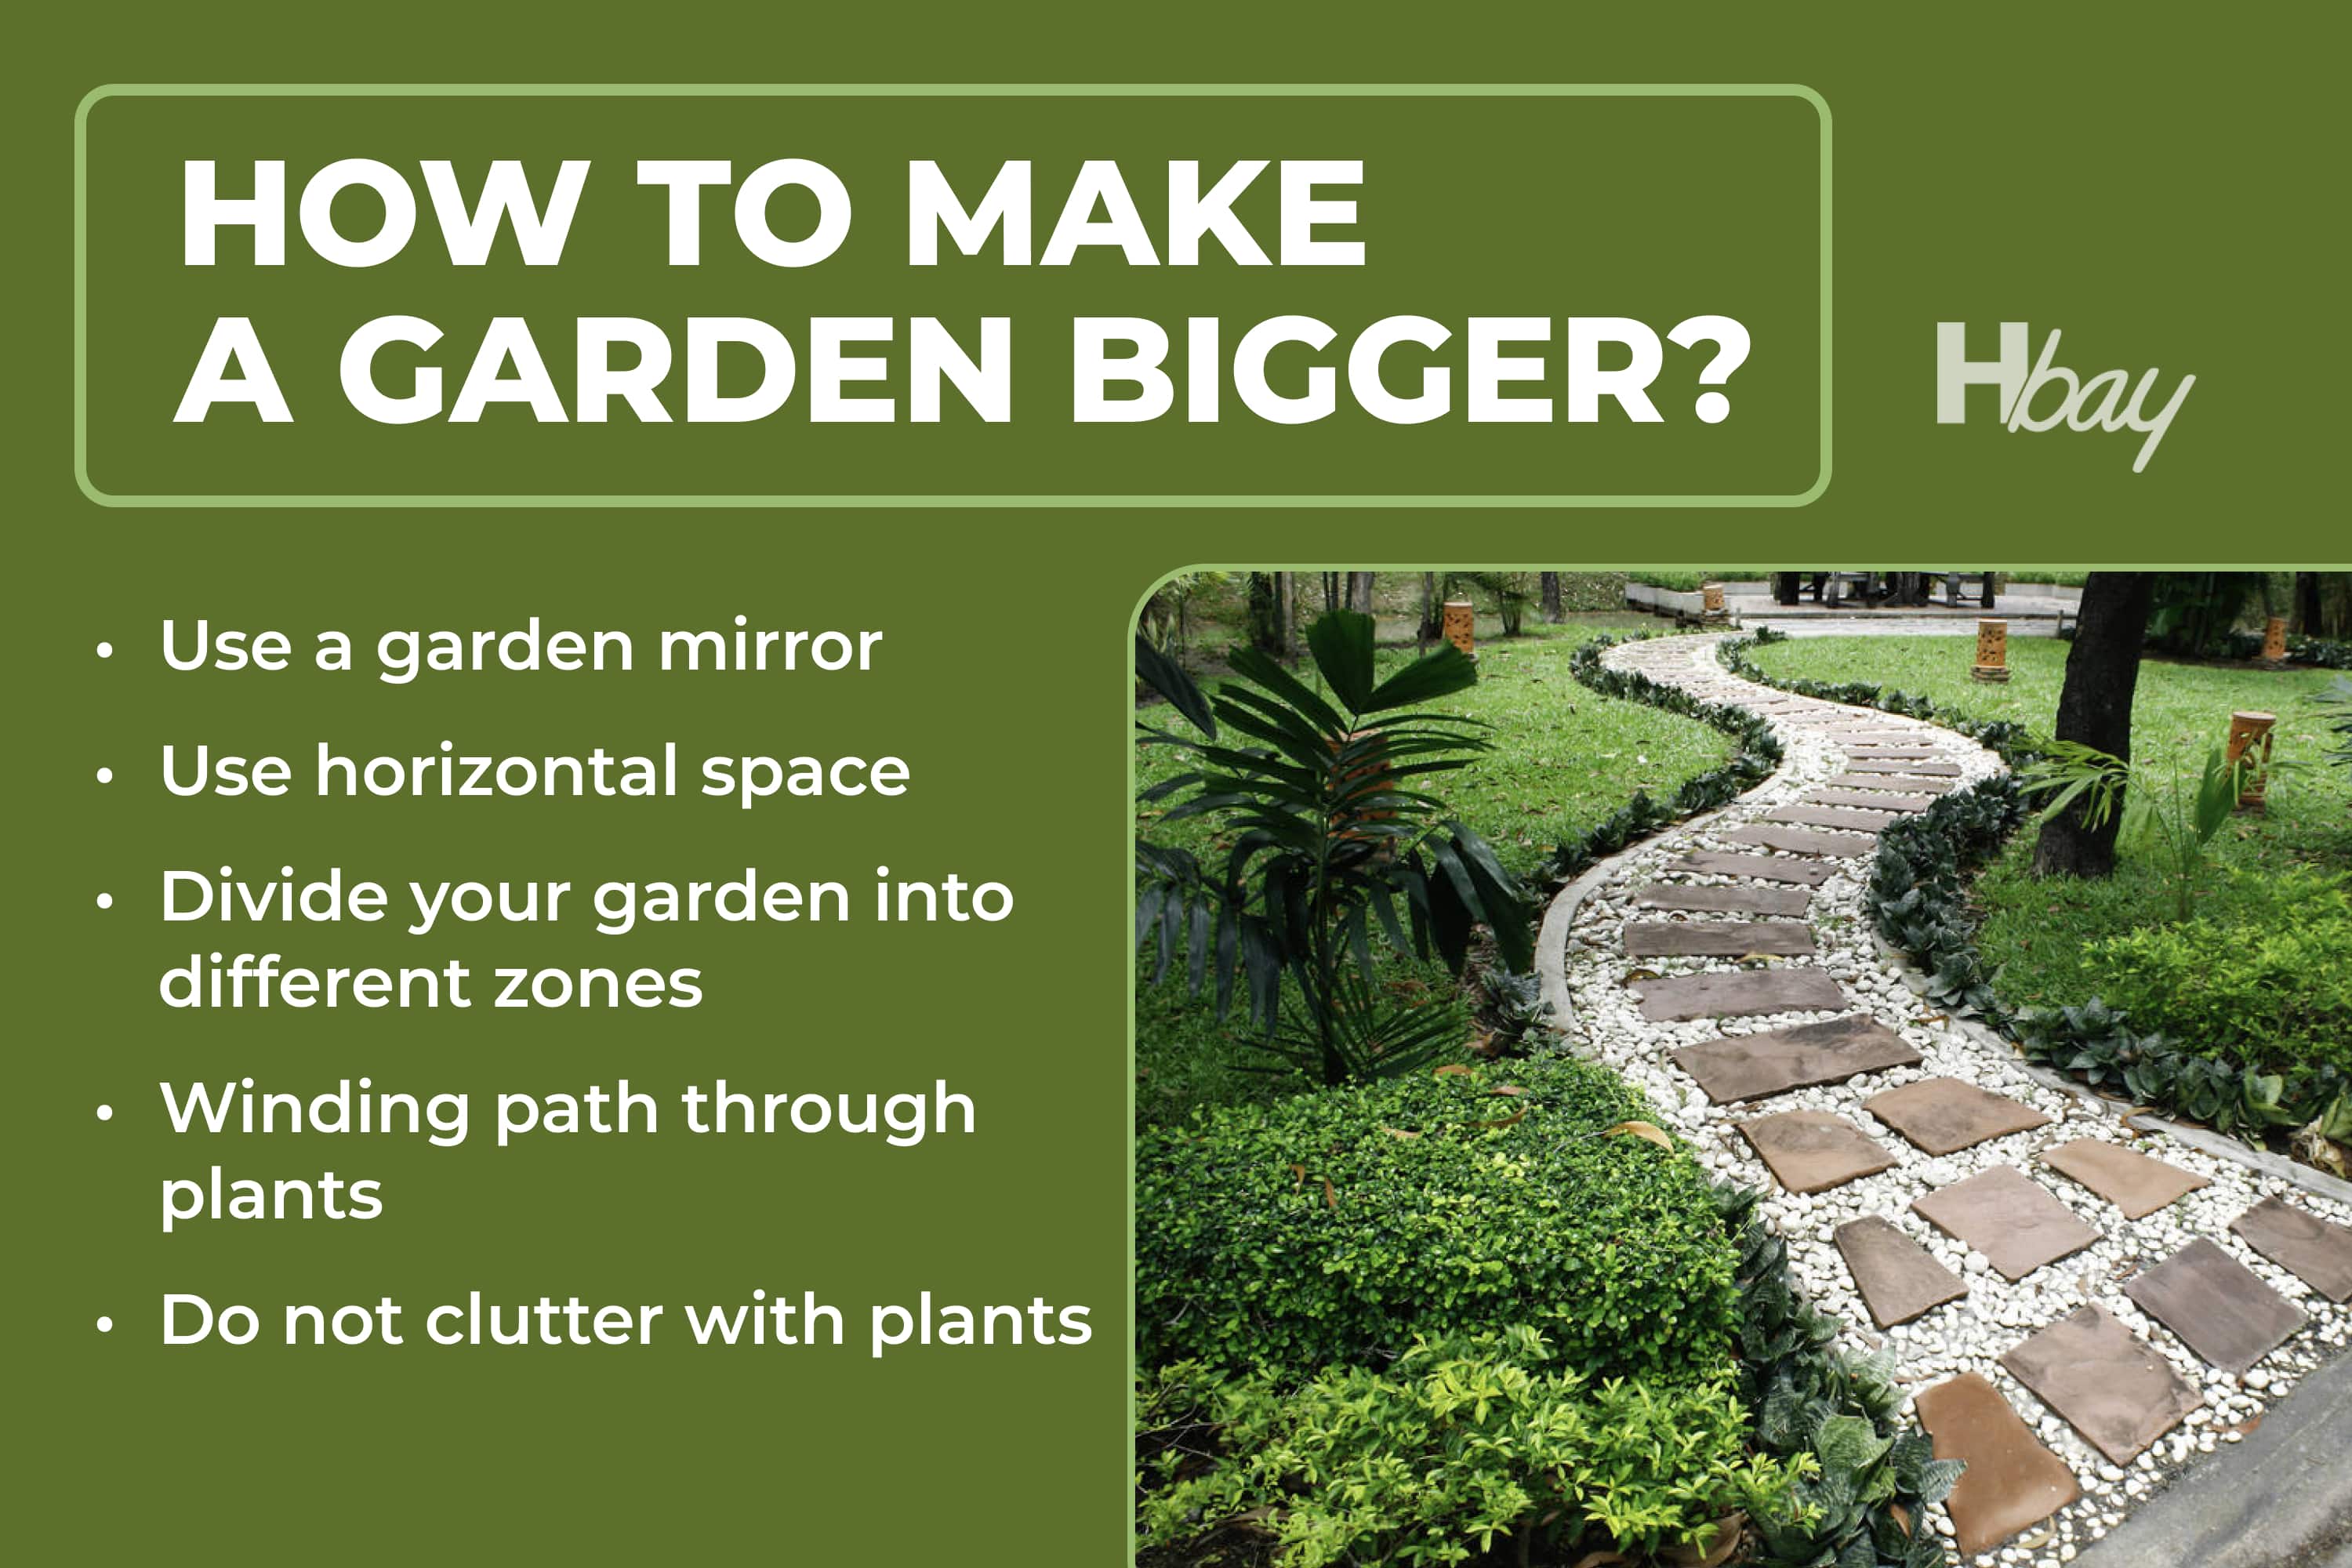 How to make a garden bigger